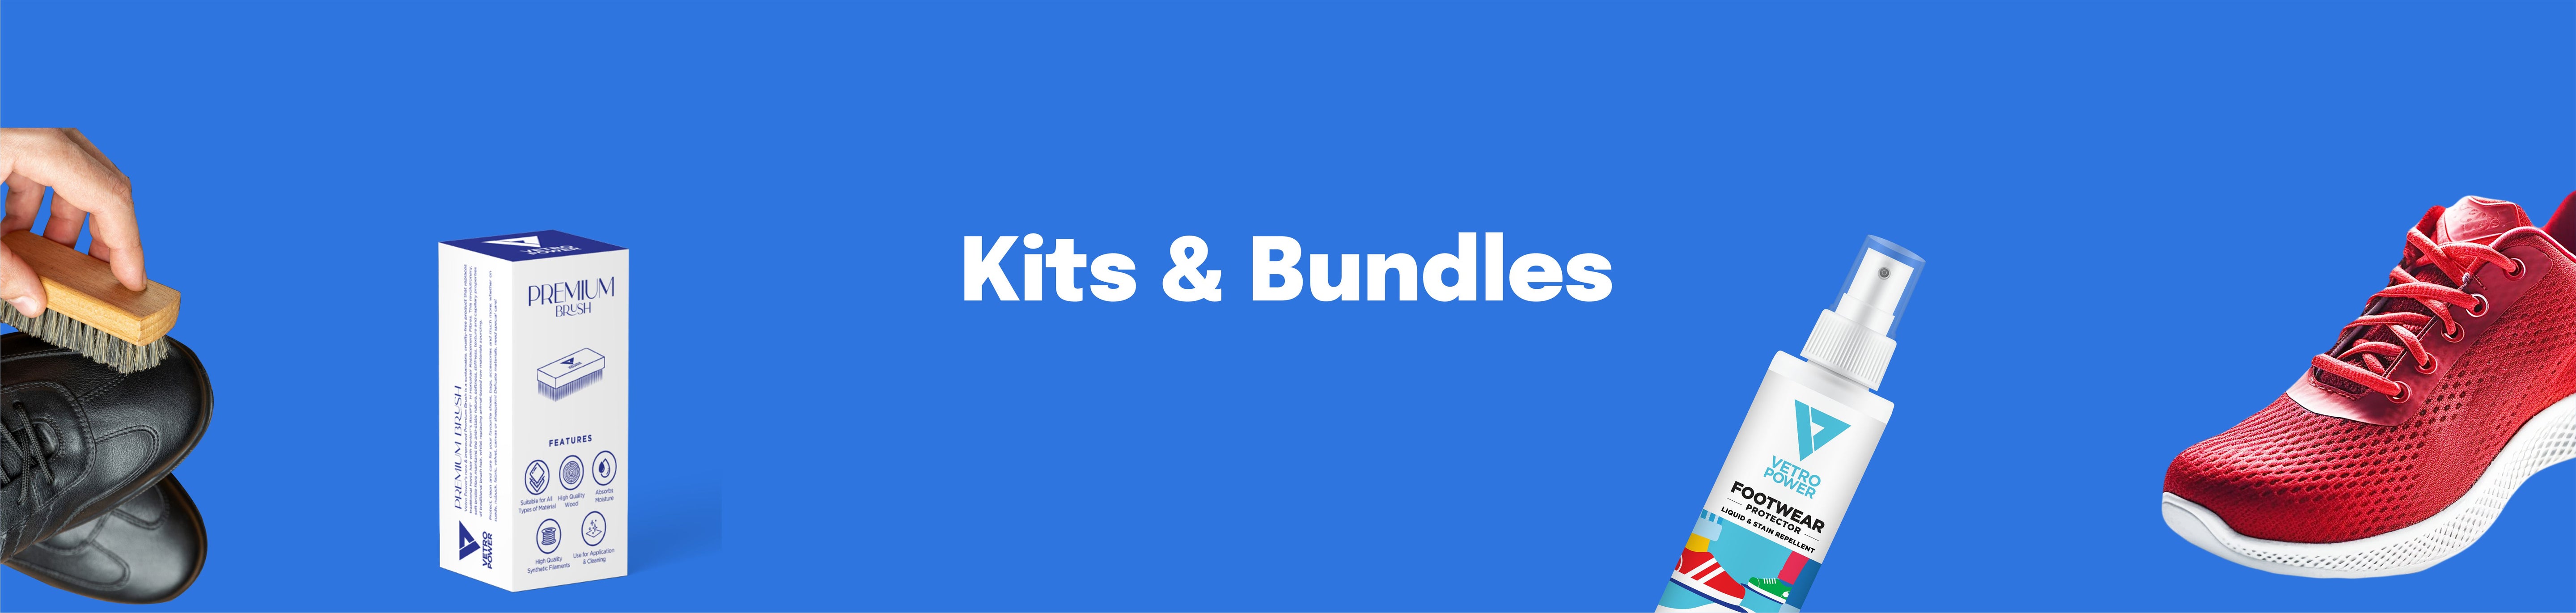 Kits & Bundles